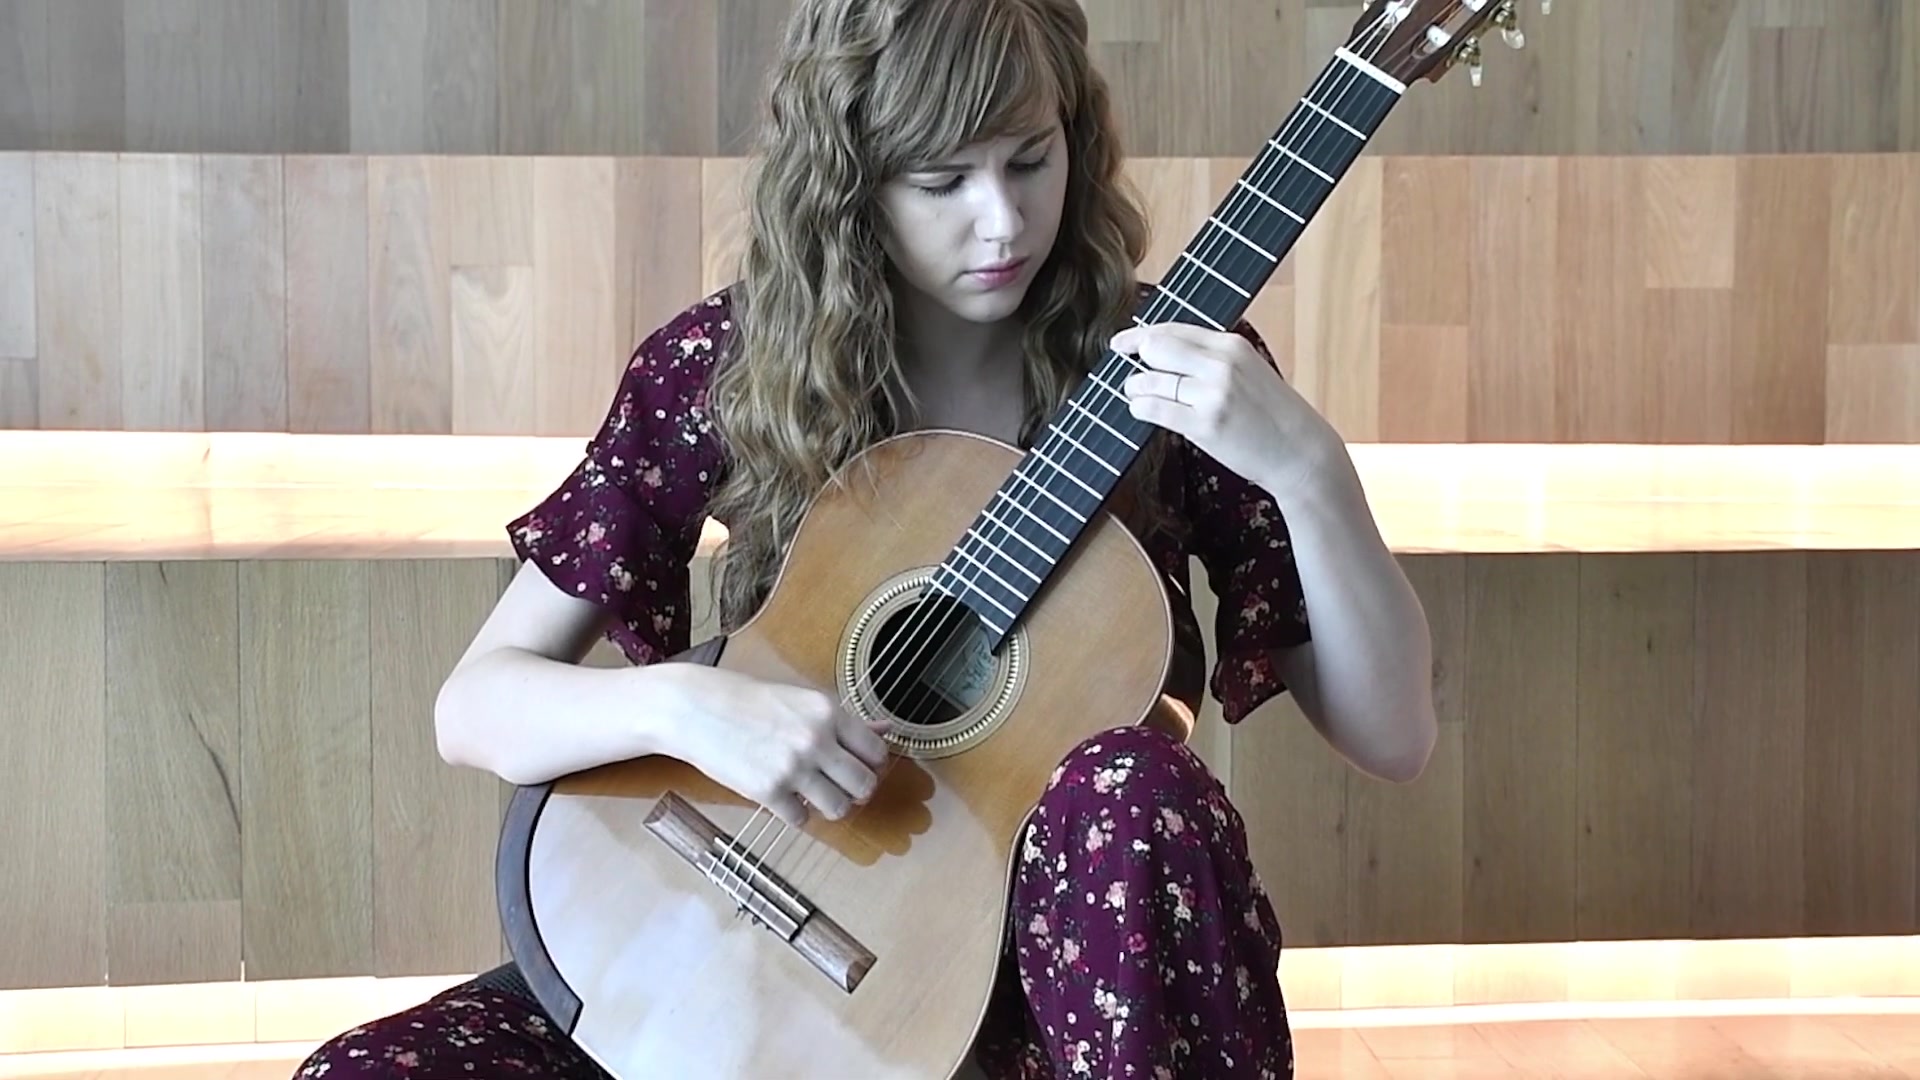 弹吉他的少女高清摄影大图-千库网